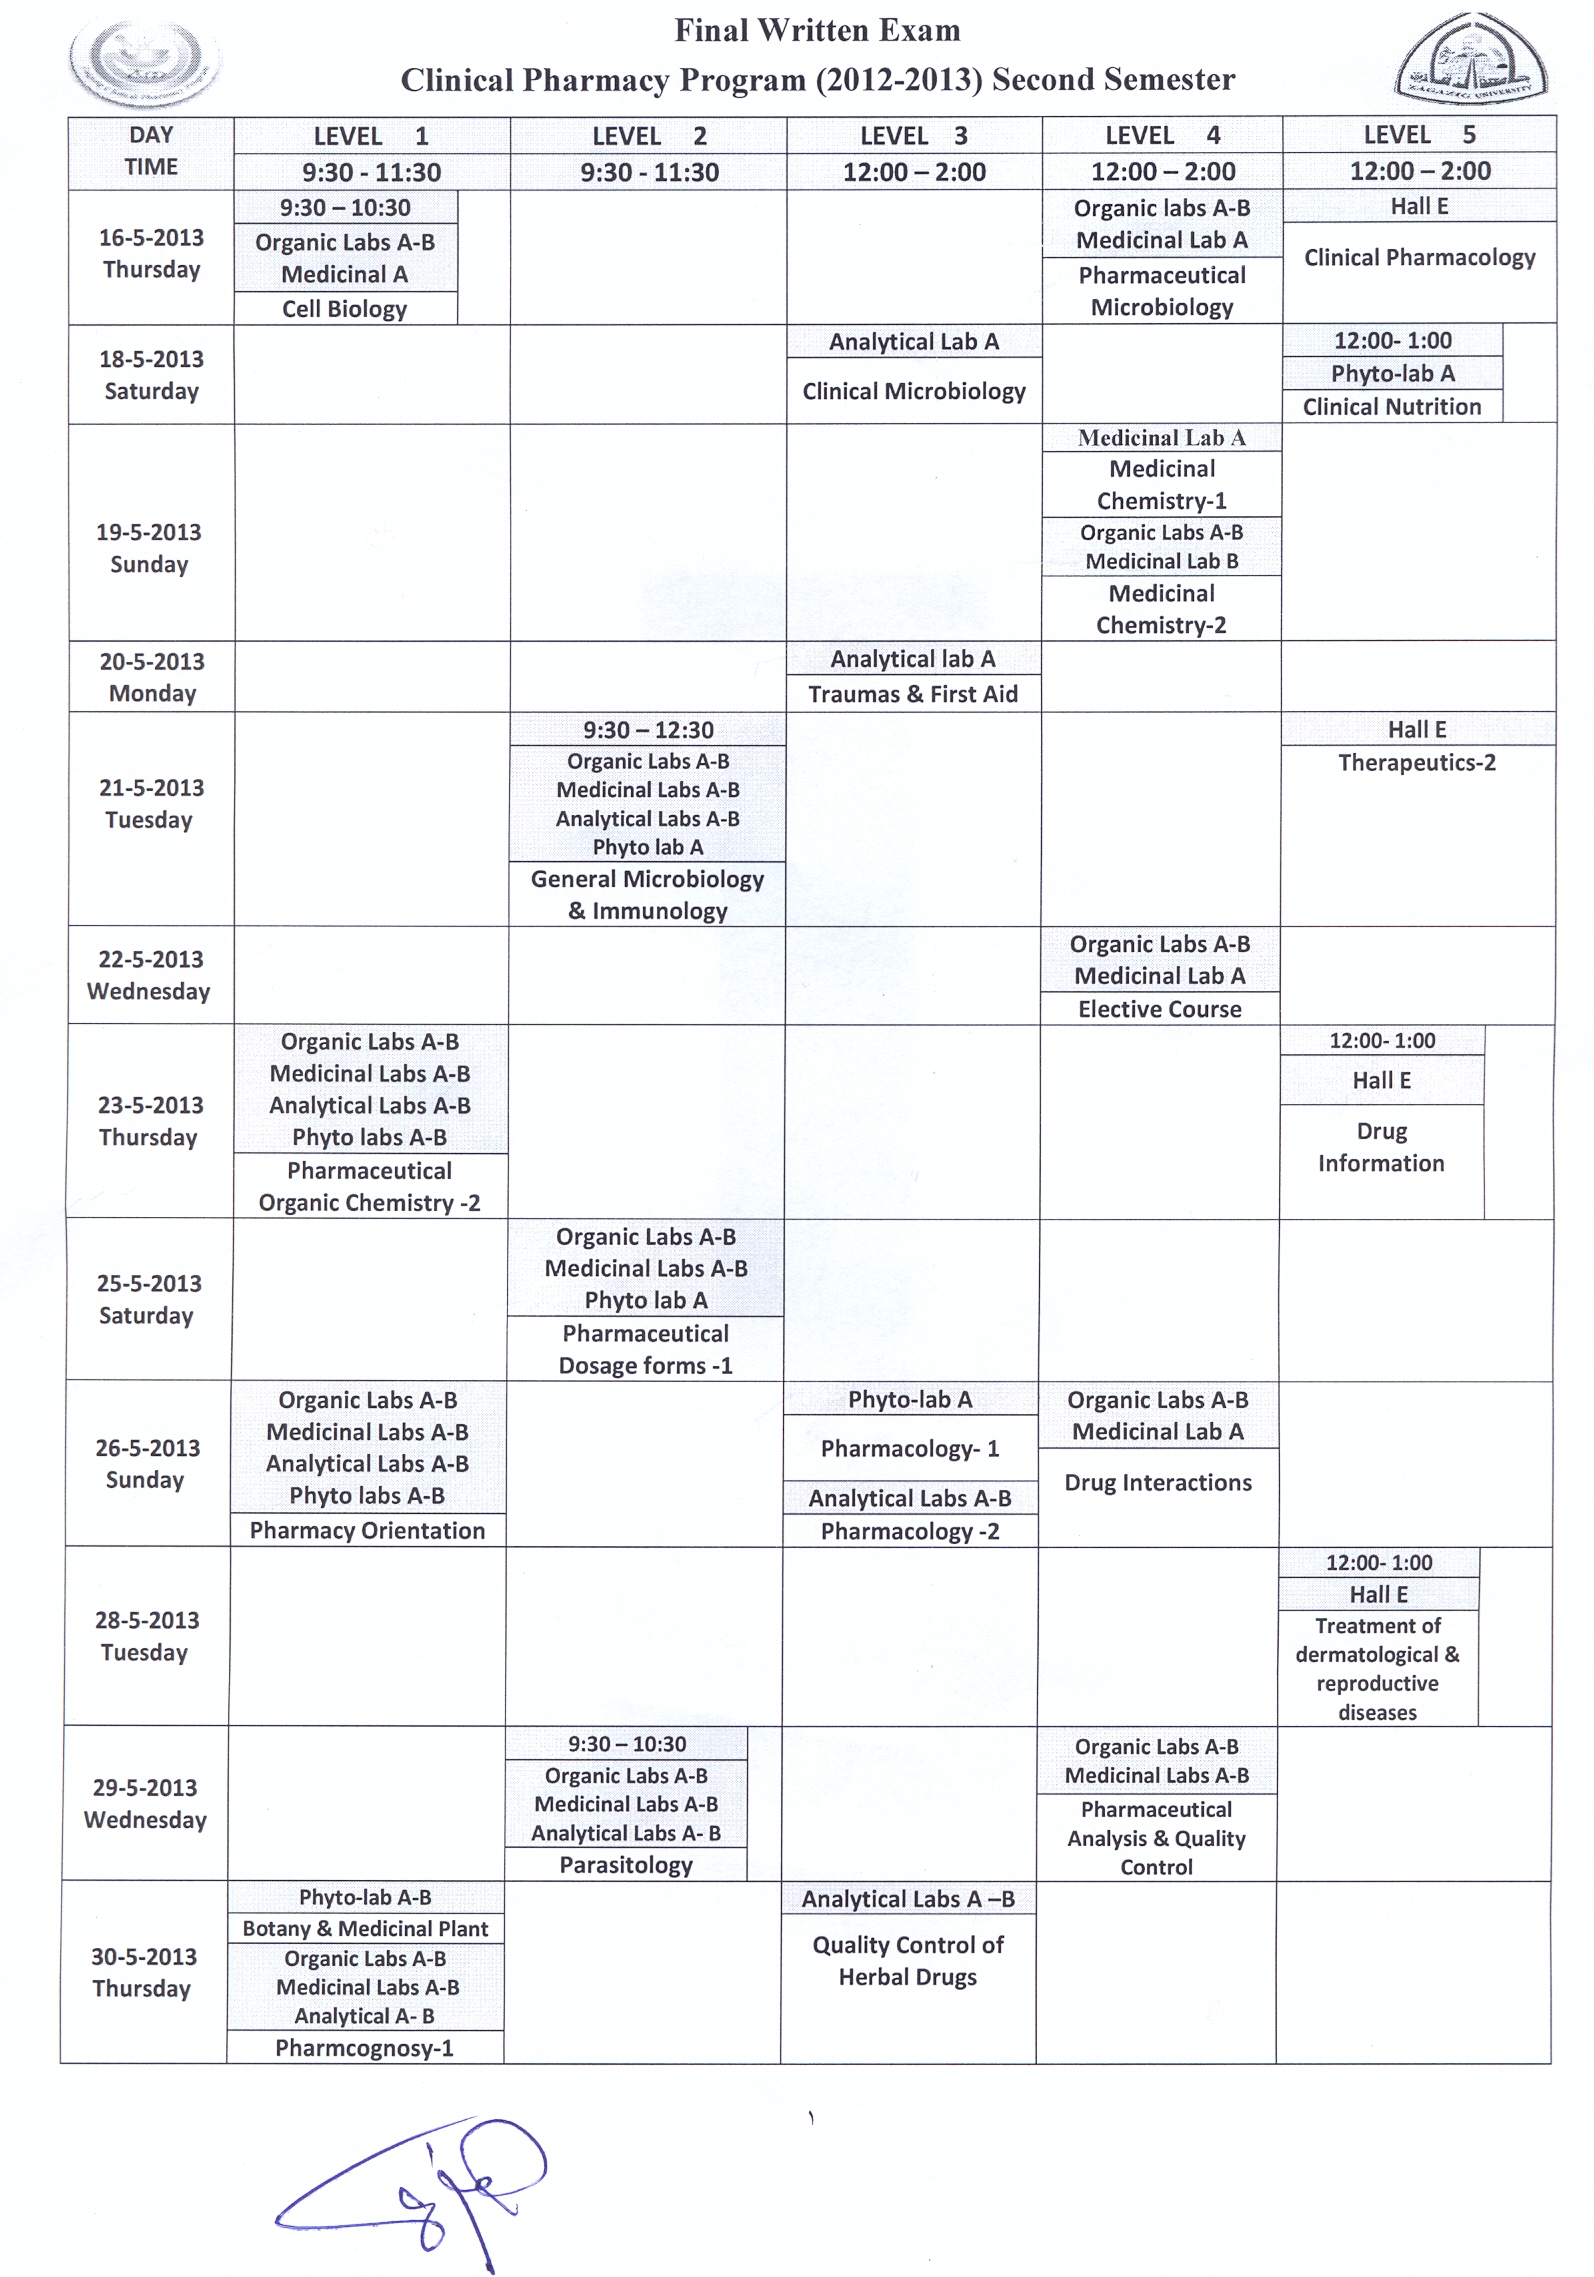 جداول إمتحانات الصيدلة الإكلينكية جميع المستويات الفصل الدراسى الثانى 2013/2012